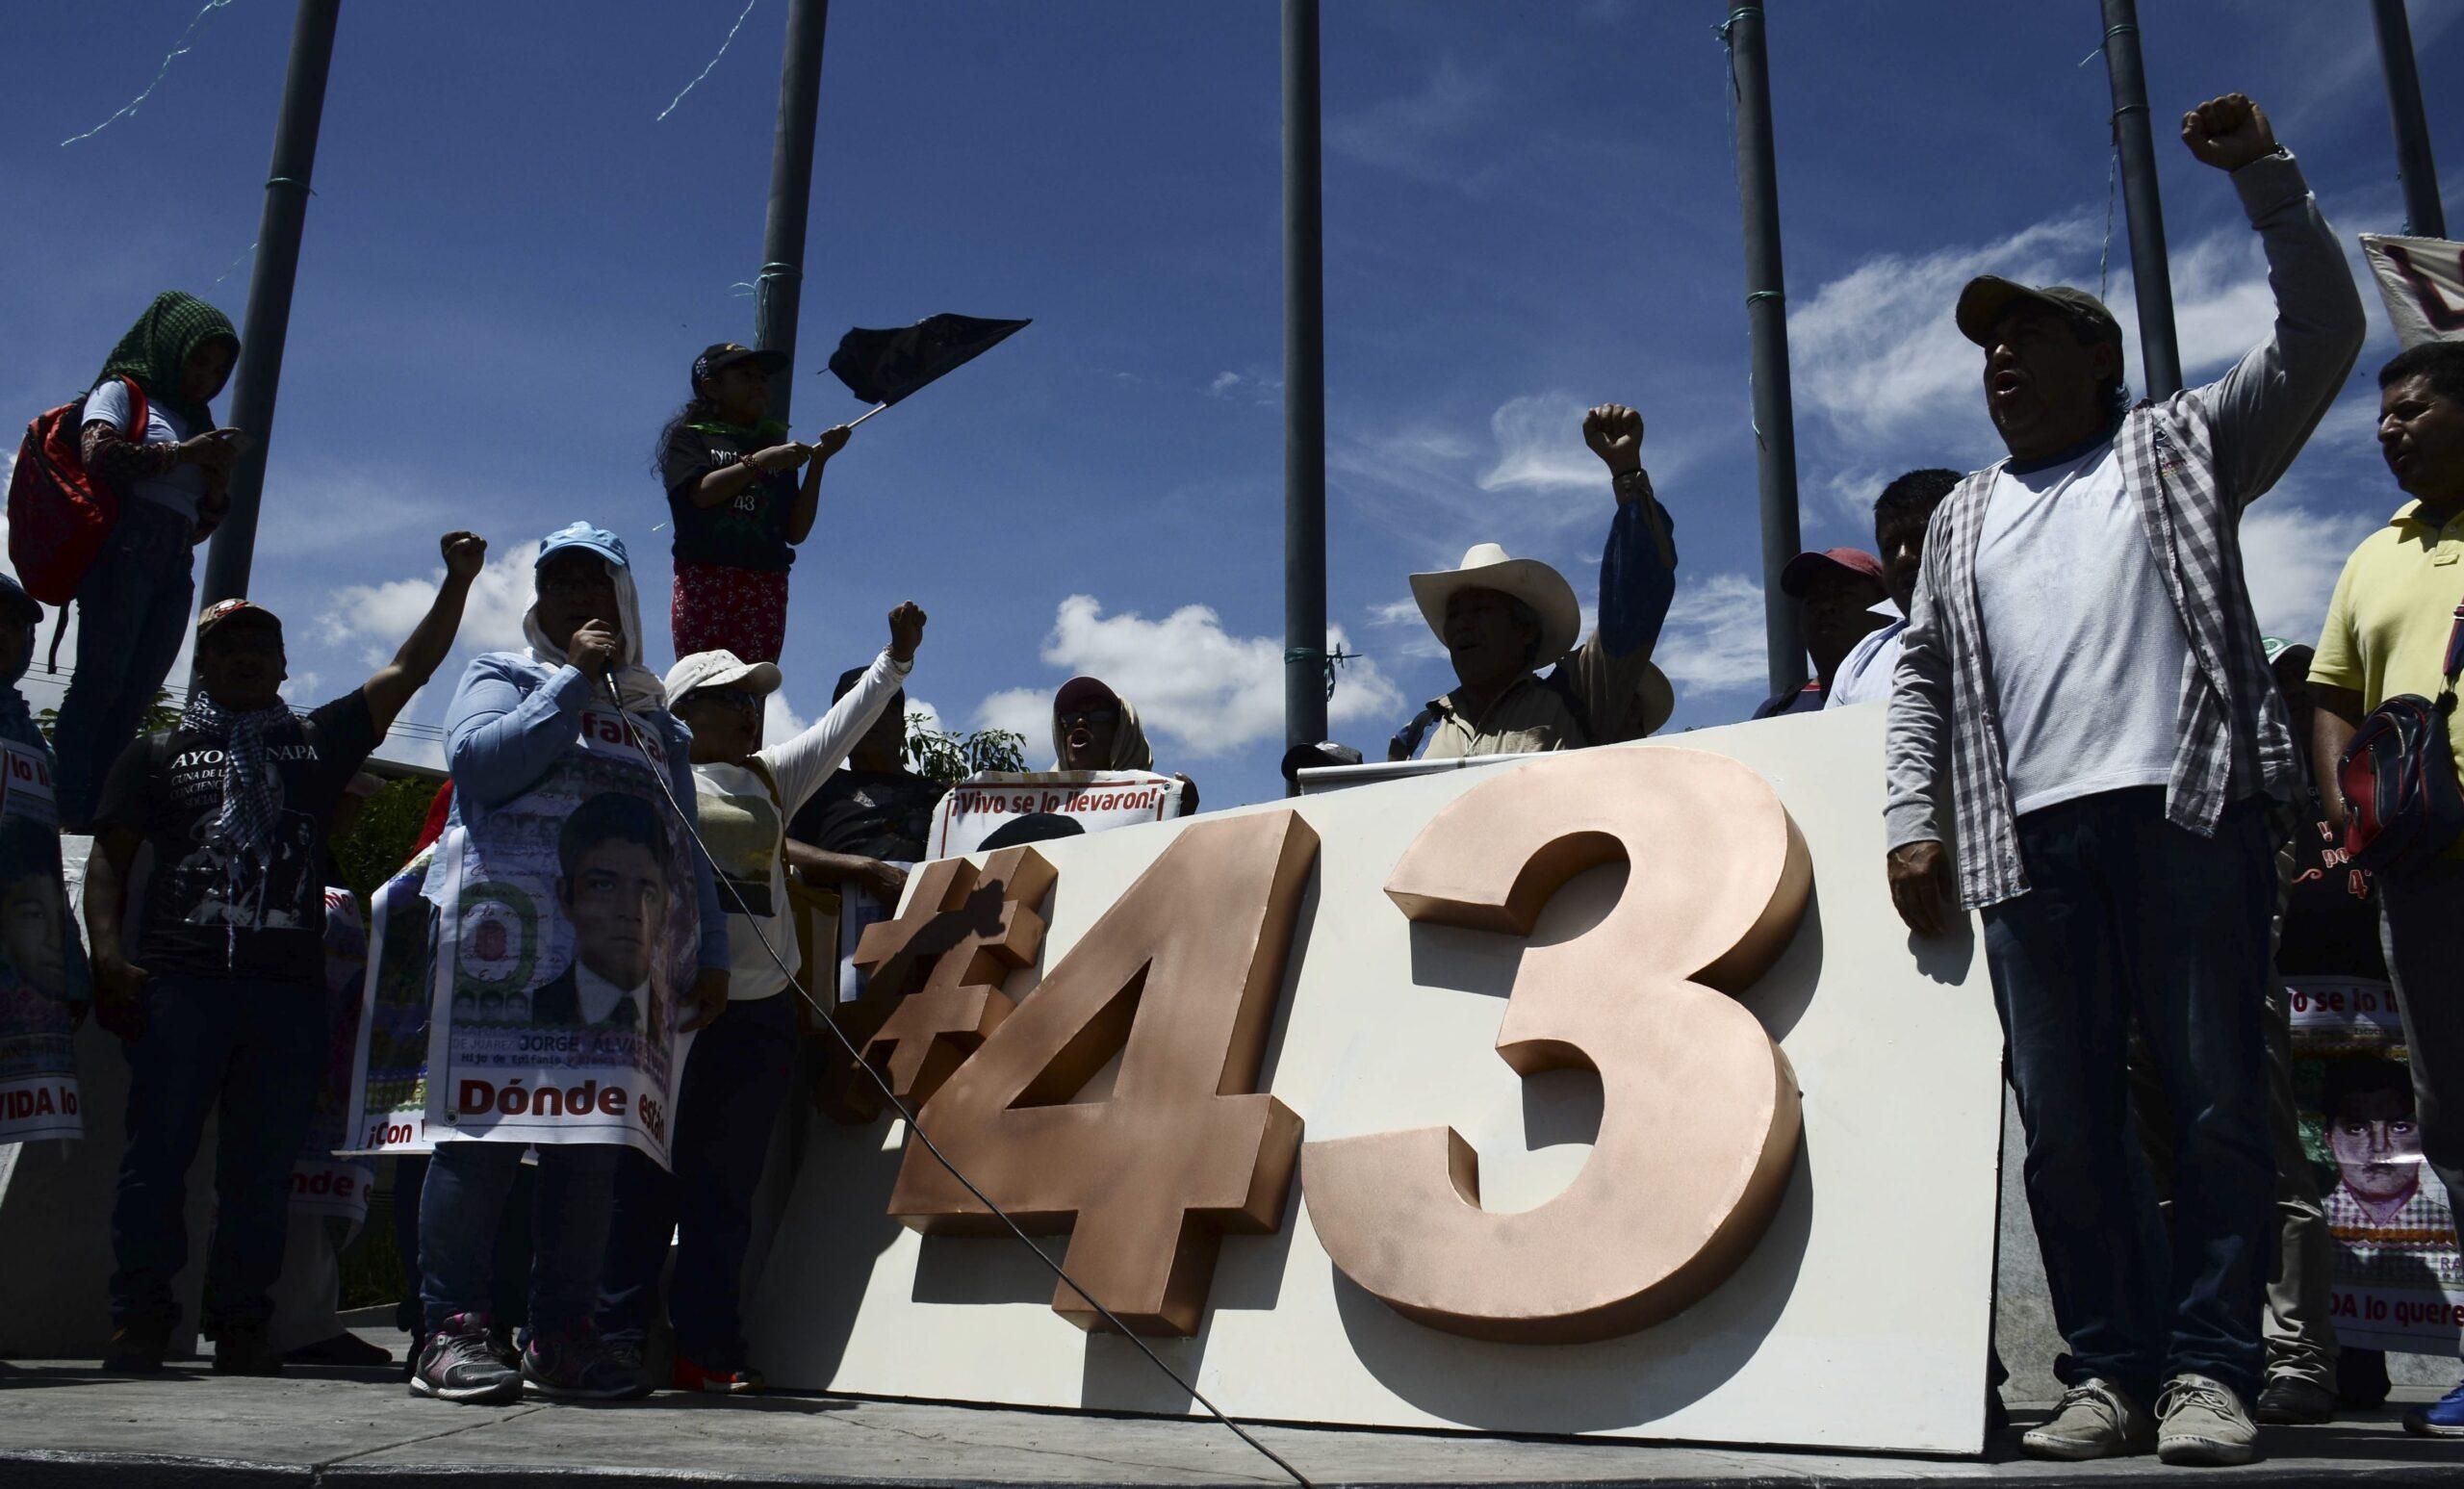 El caso Ayotzinapa está abierto, PGR no ha dado resultados concluyentes, dice la CNDH